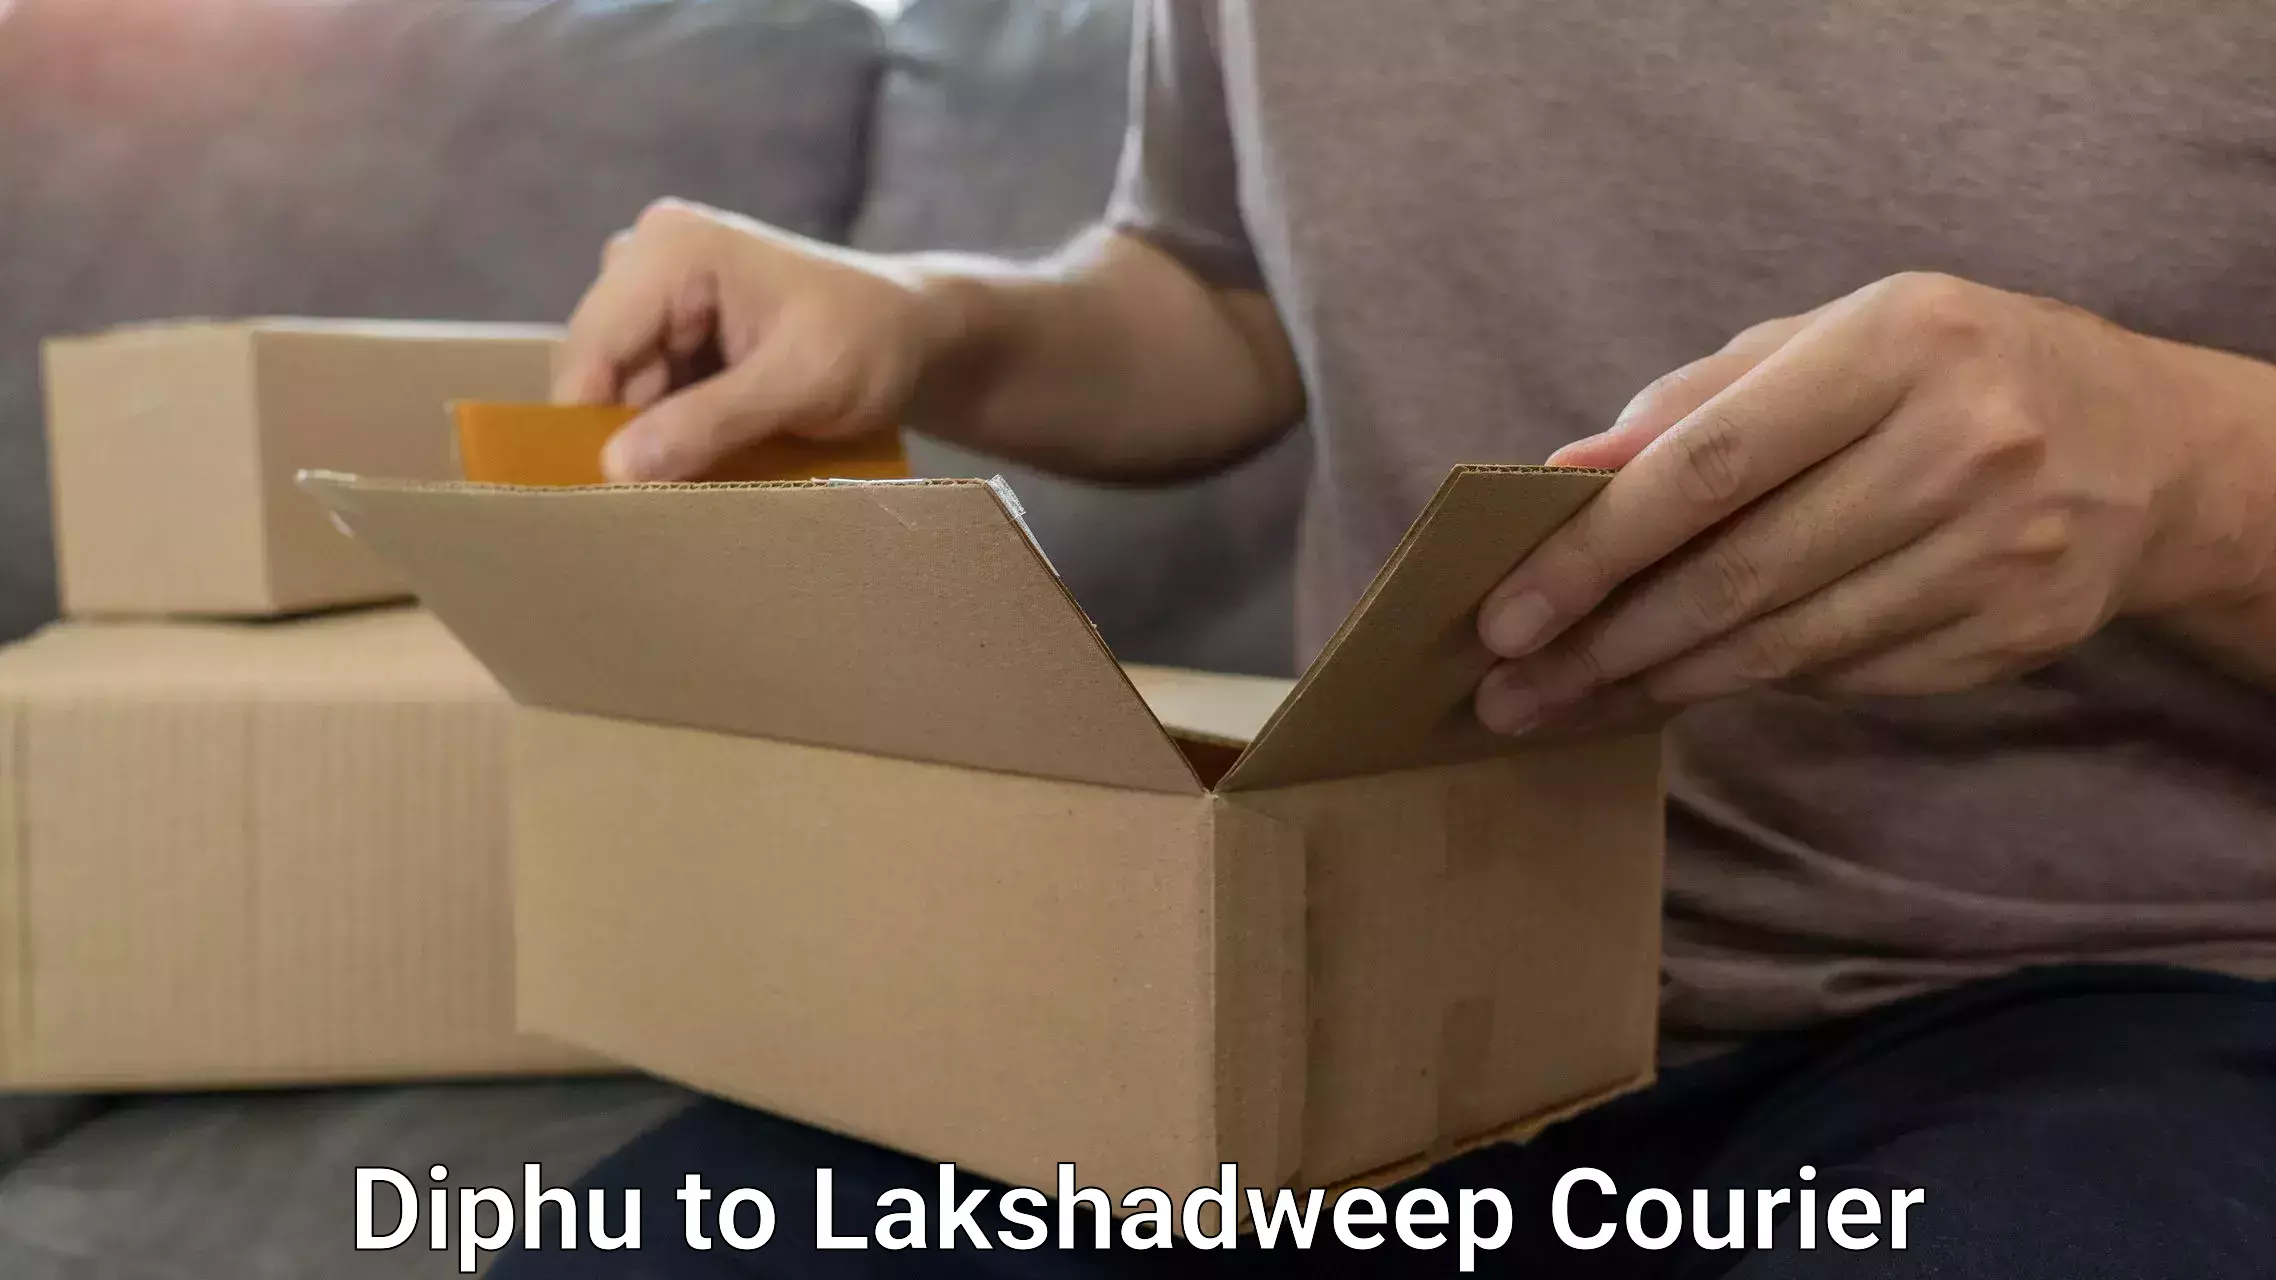 Luggage shipping planner Diphu to Lakshadweep